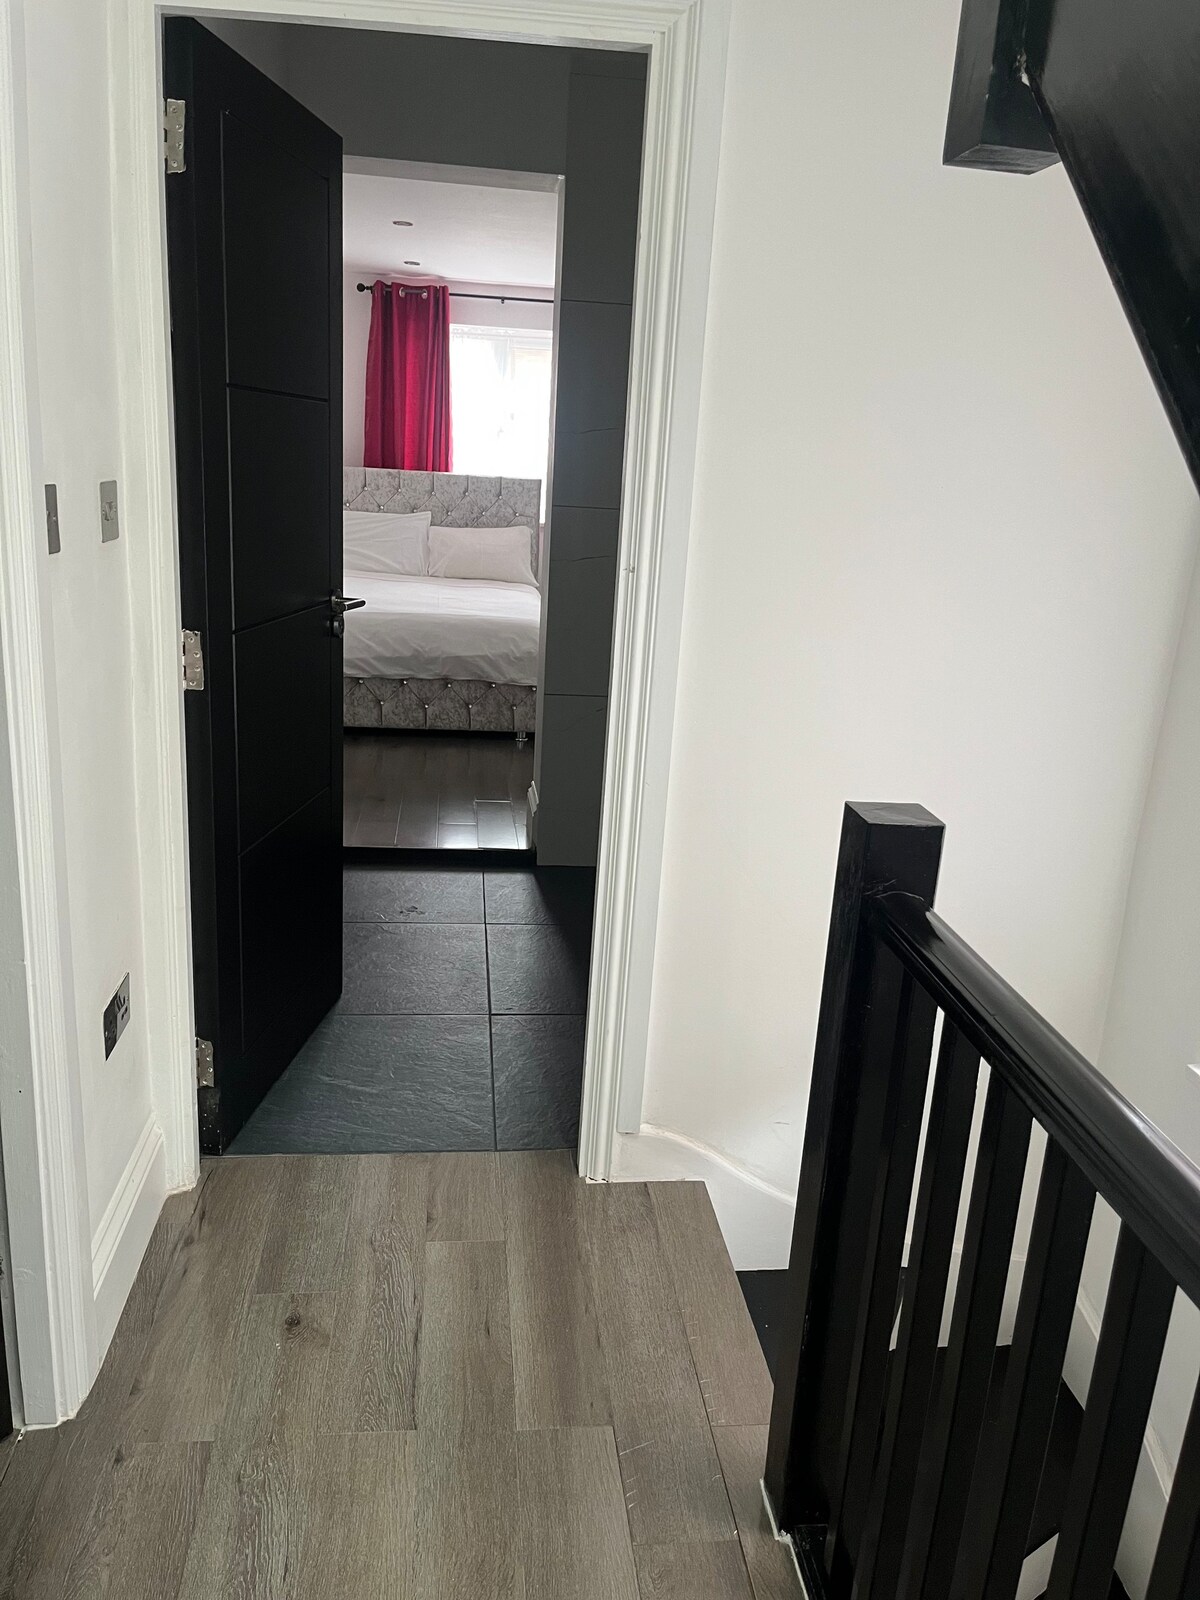 New double room with en-suite